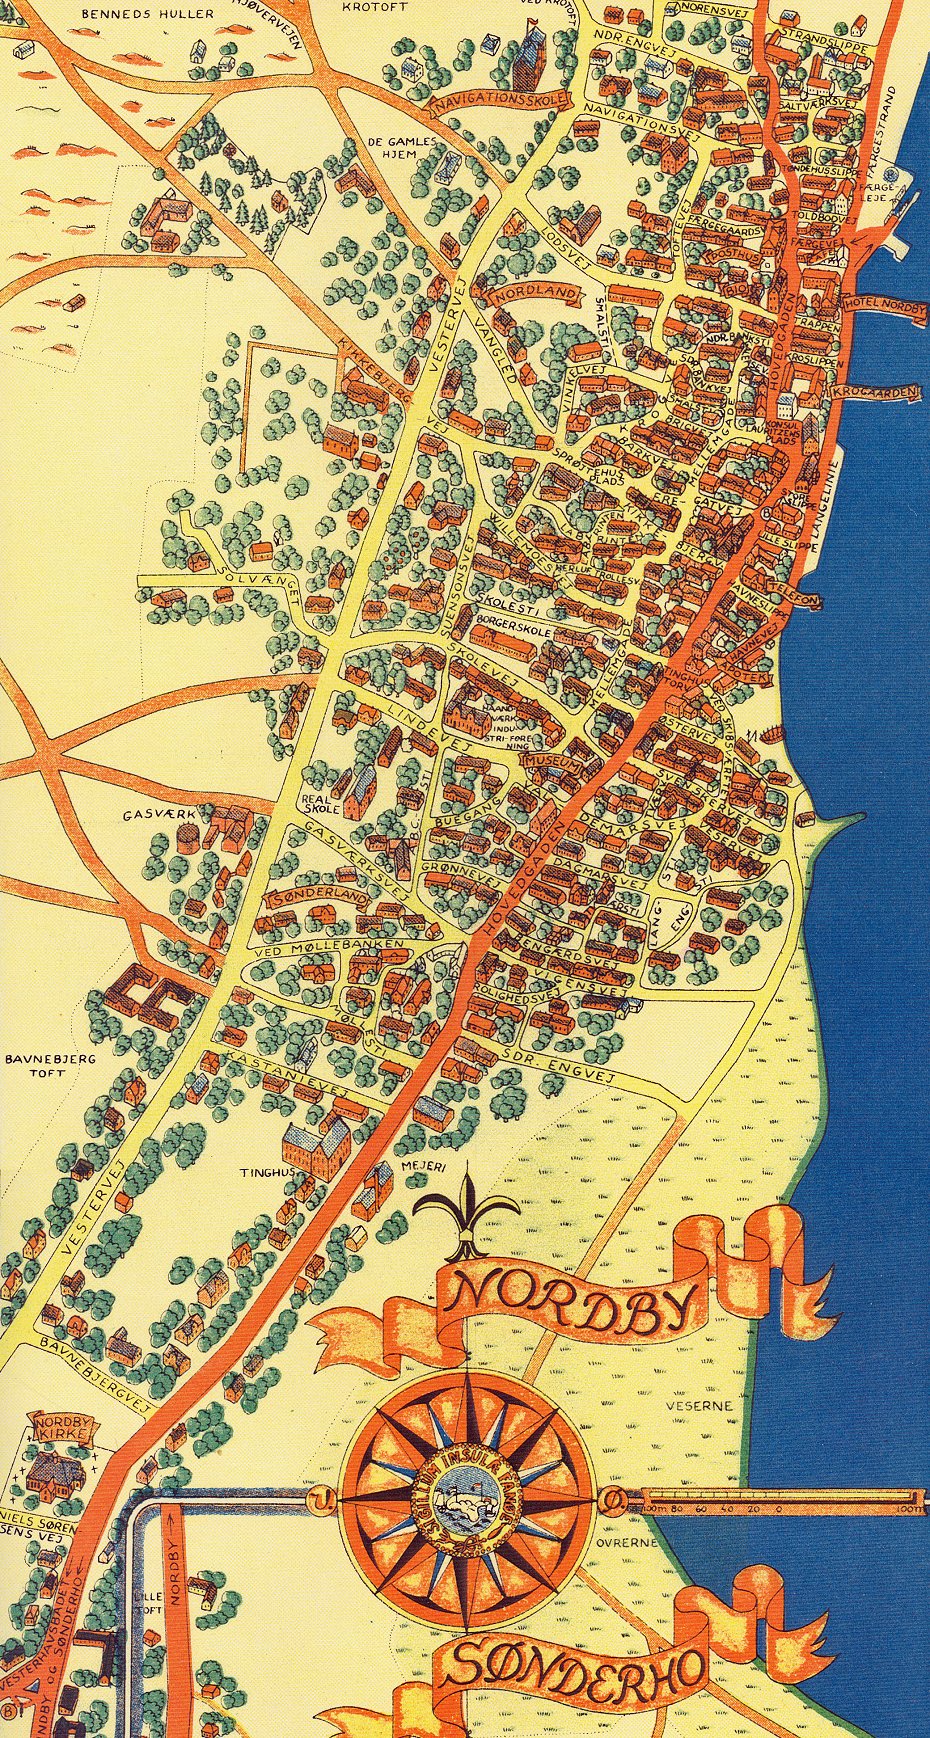 Nordby på Fanø. Udsnit af Turistkort med Beskrivelse af Fanø. Udarbejdet af Romax Kartografi 1948